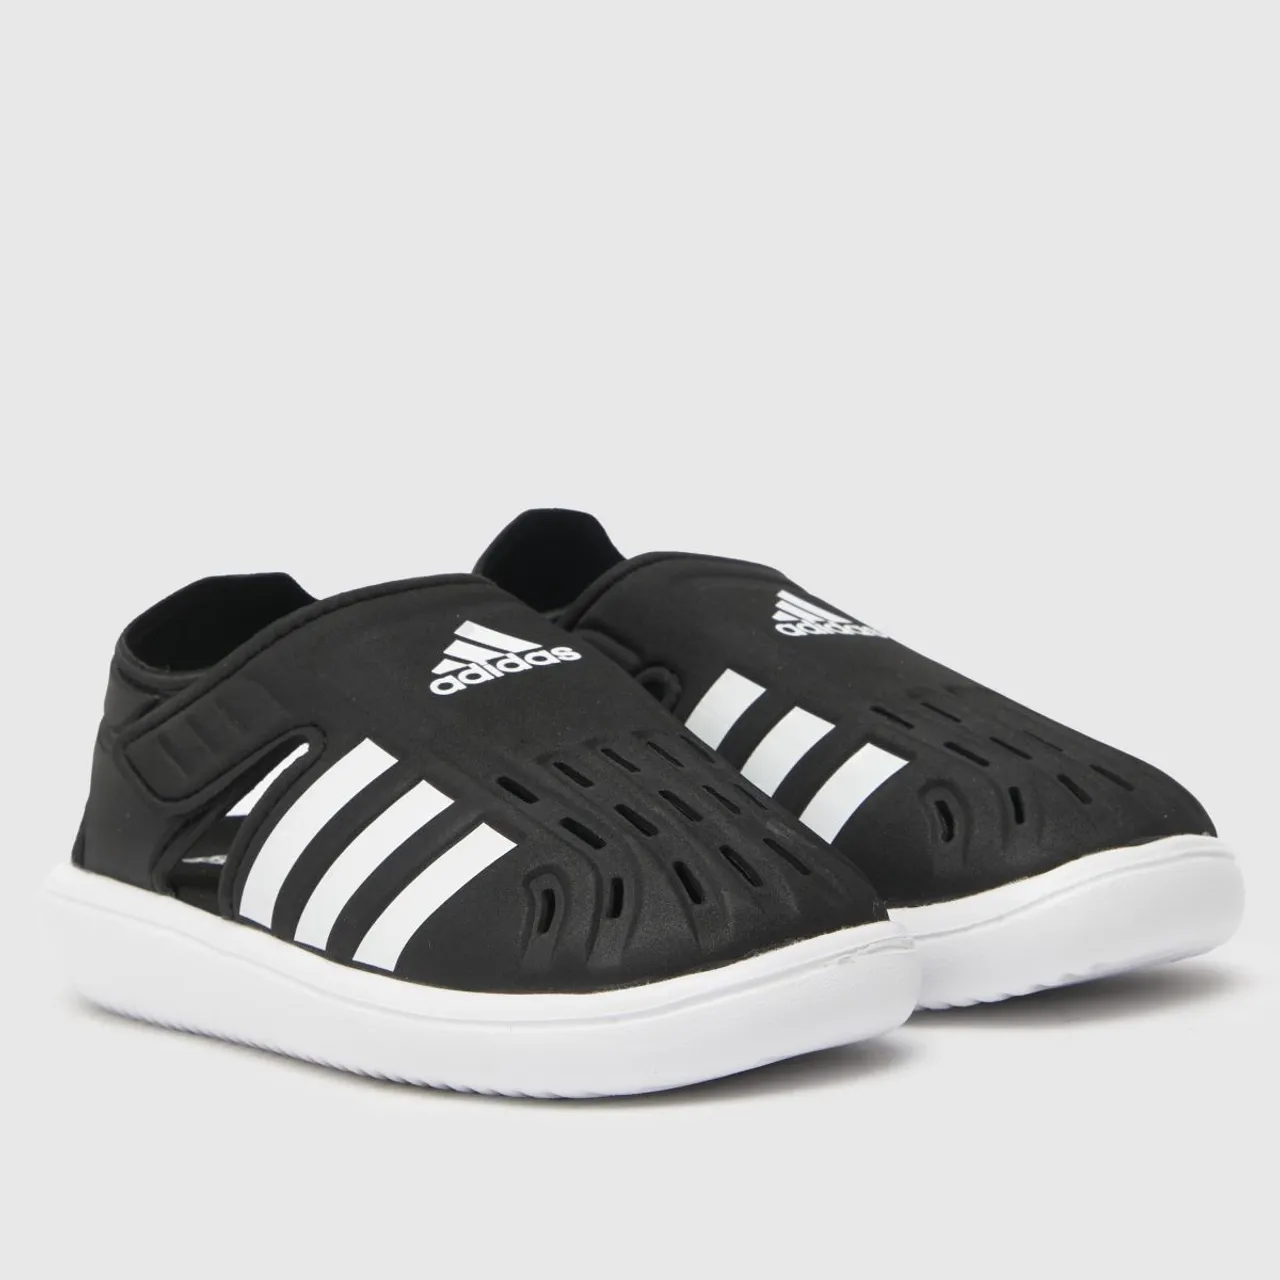 Adidas Black & White Water Sandal Toddler Sandals